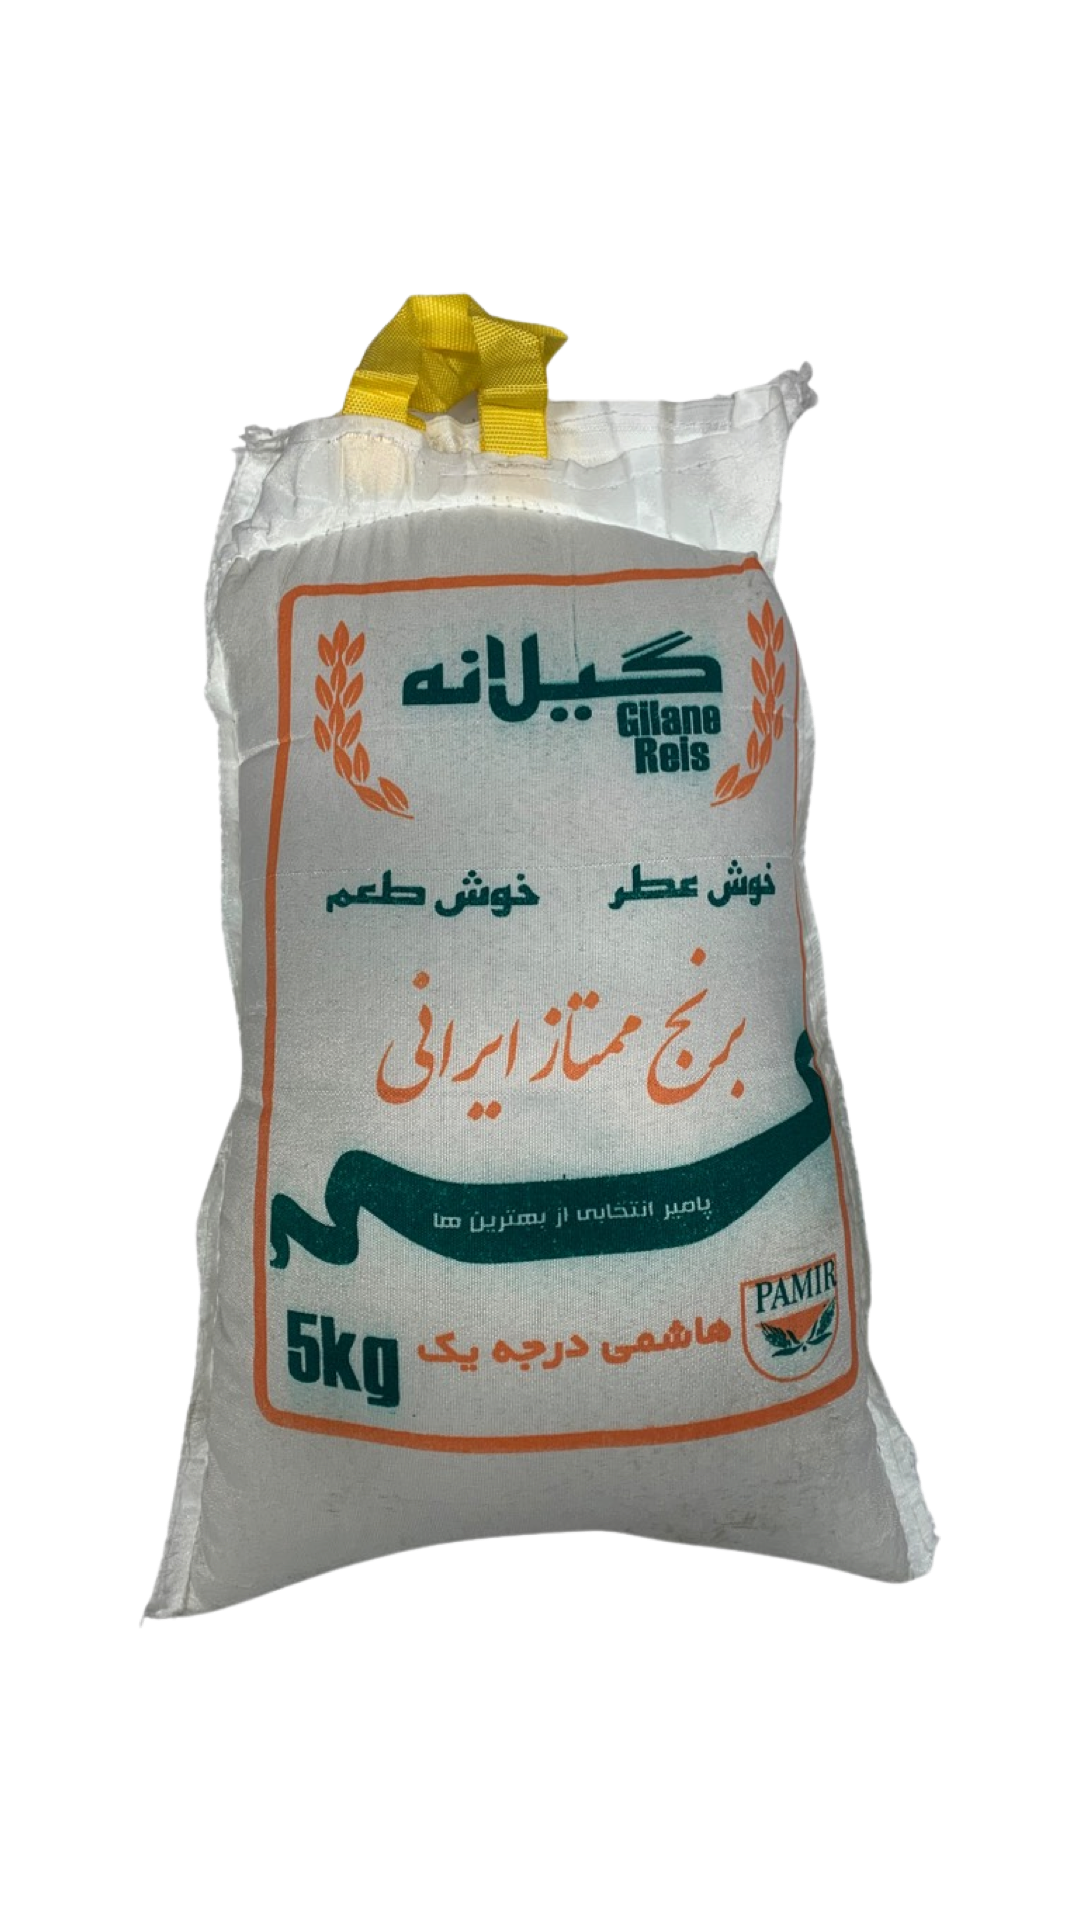 Persiskt ris Hashemi - 5 kg